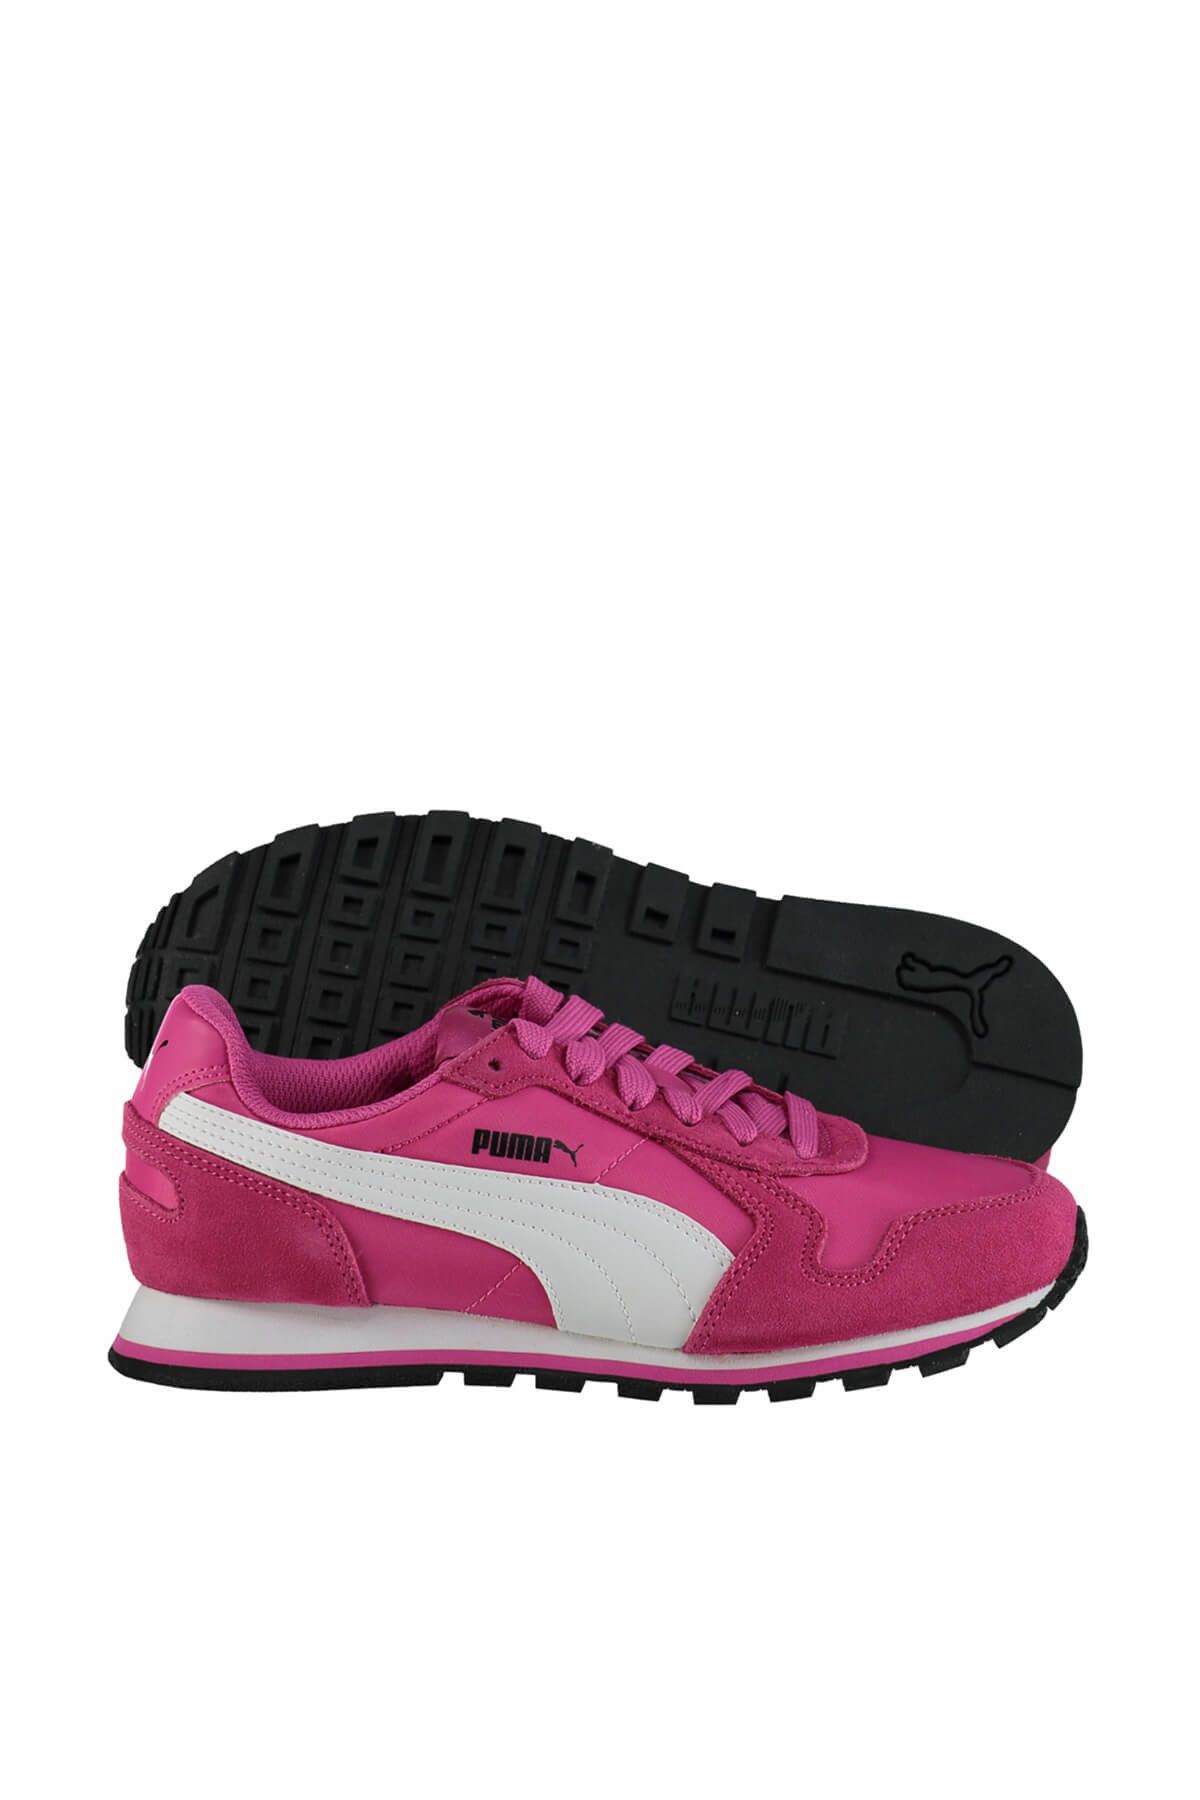 Puma Kadın Koşu & Antrenman Ayakkabısı - St Runner Nl Kadın Pembe Günlük Spor Ayakkabı - 35673839